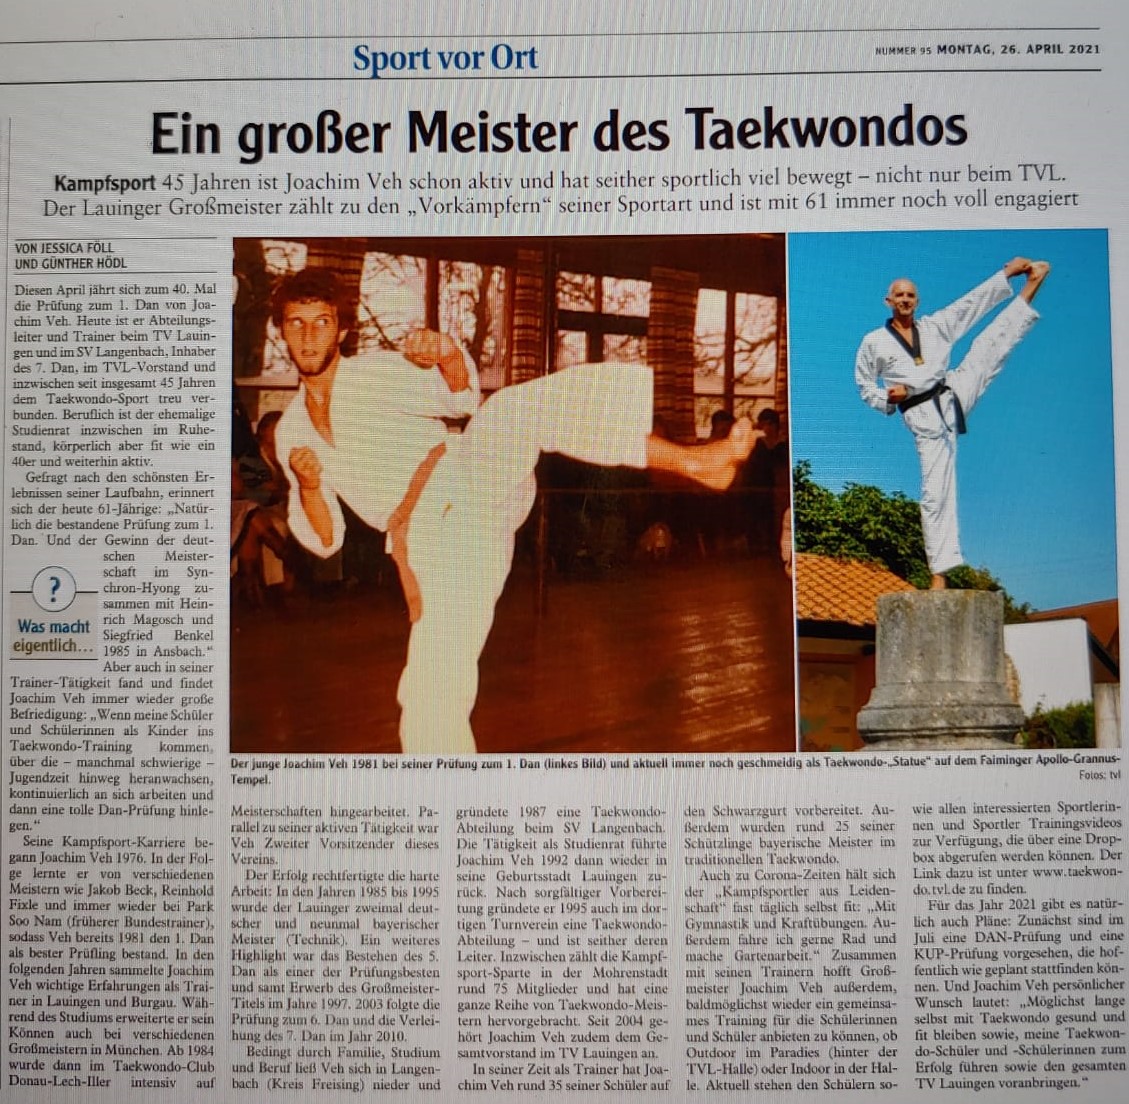 Ein grosser Meister des Taekwondos